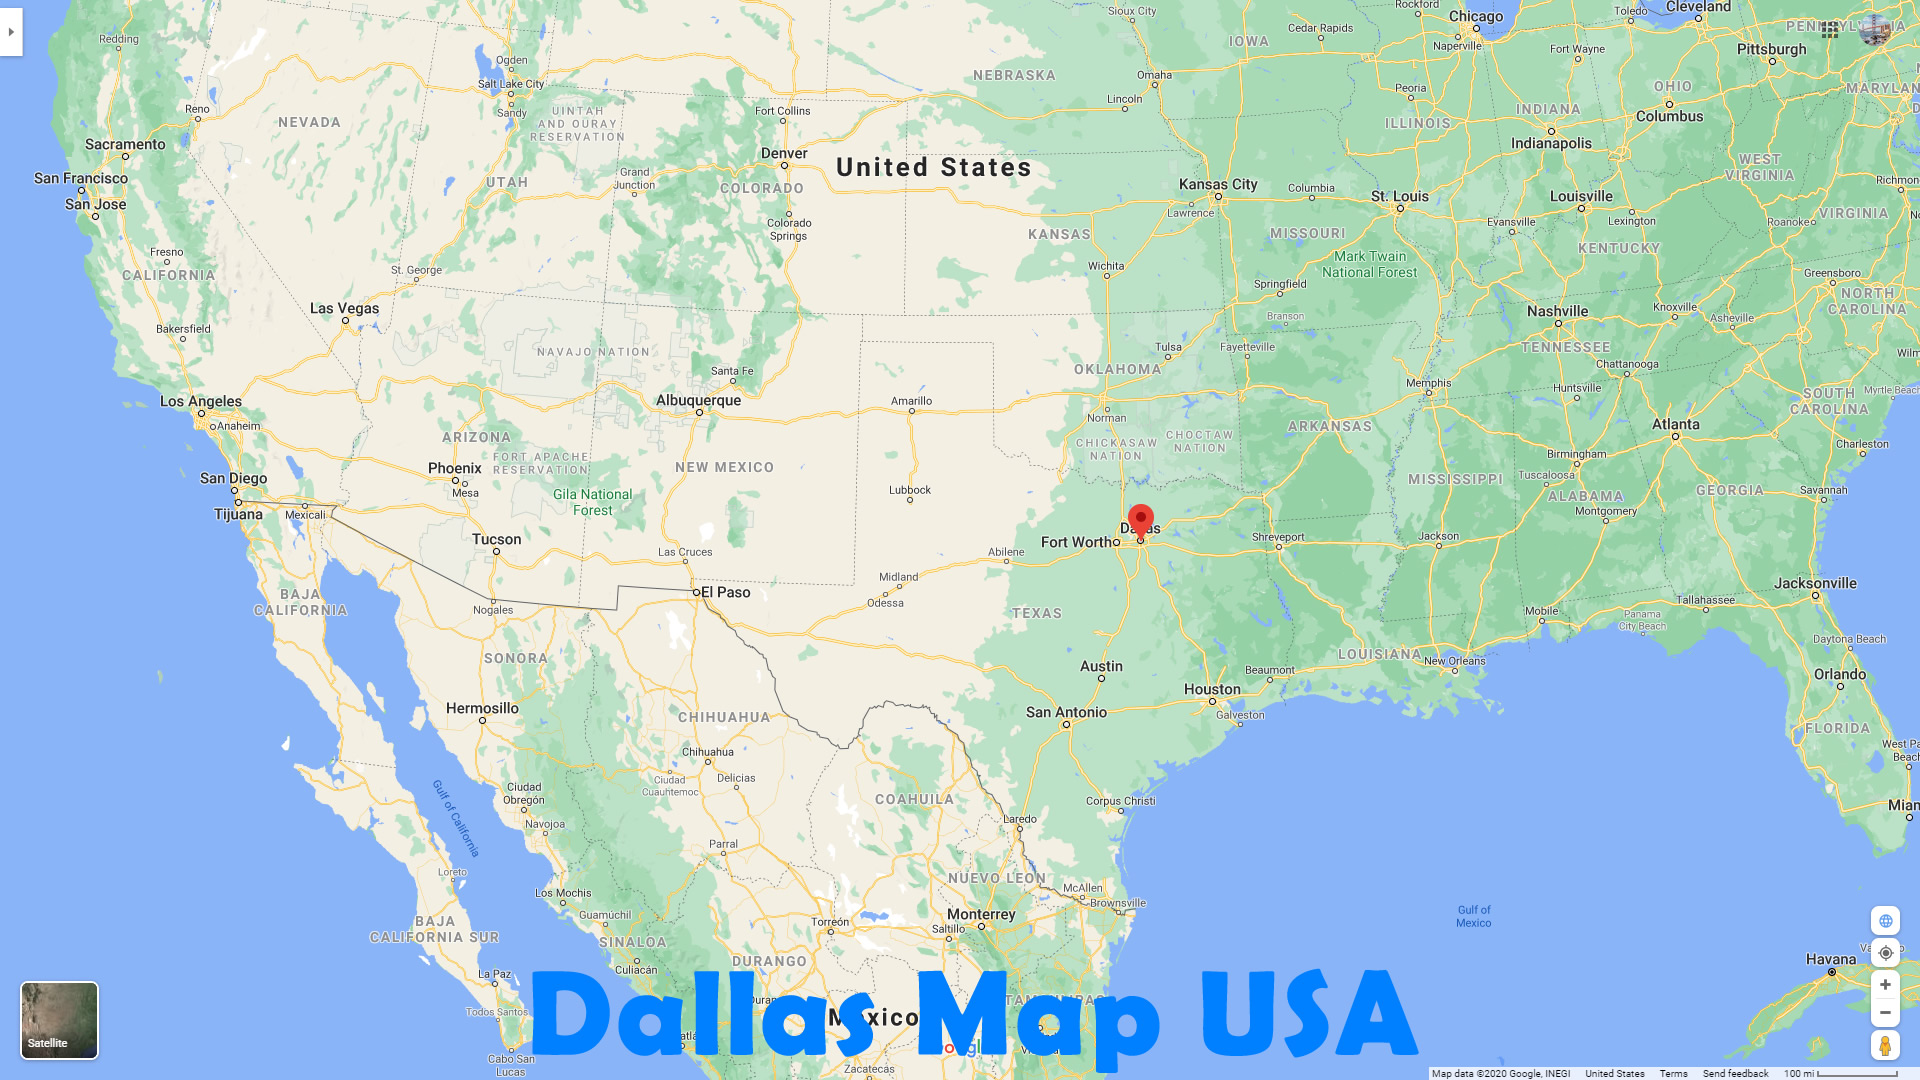 Dallas Map USA